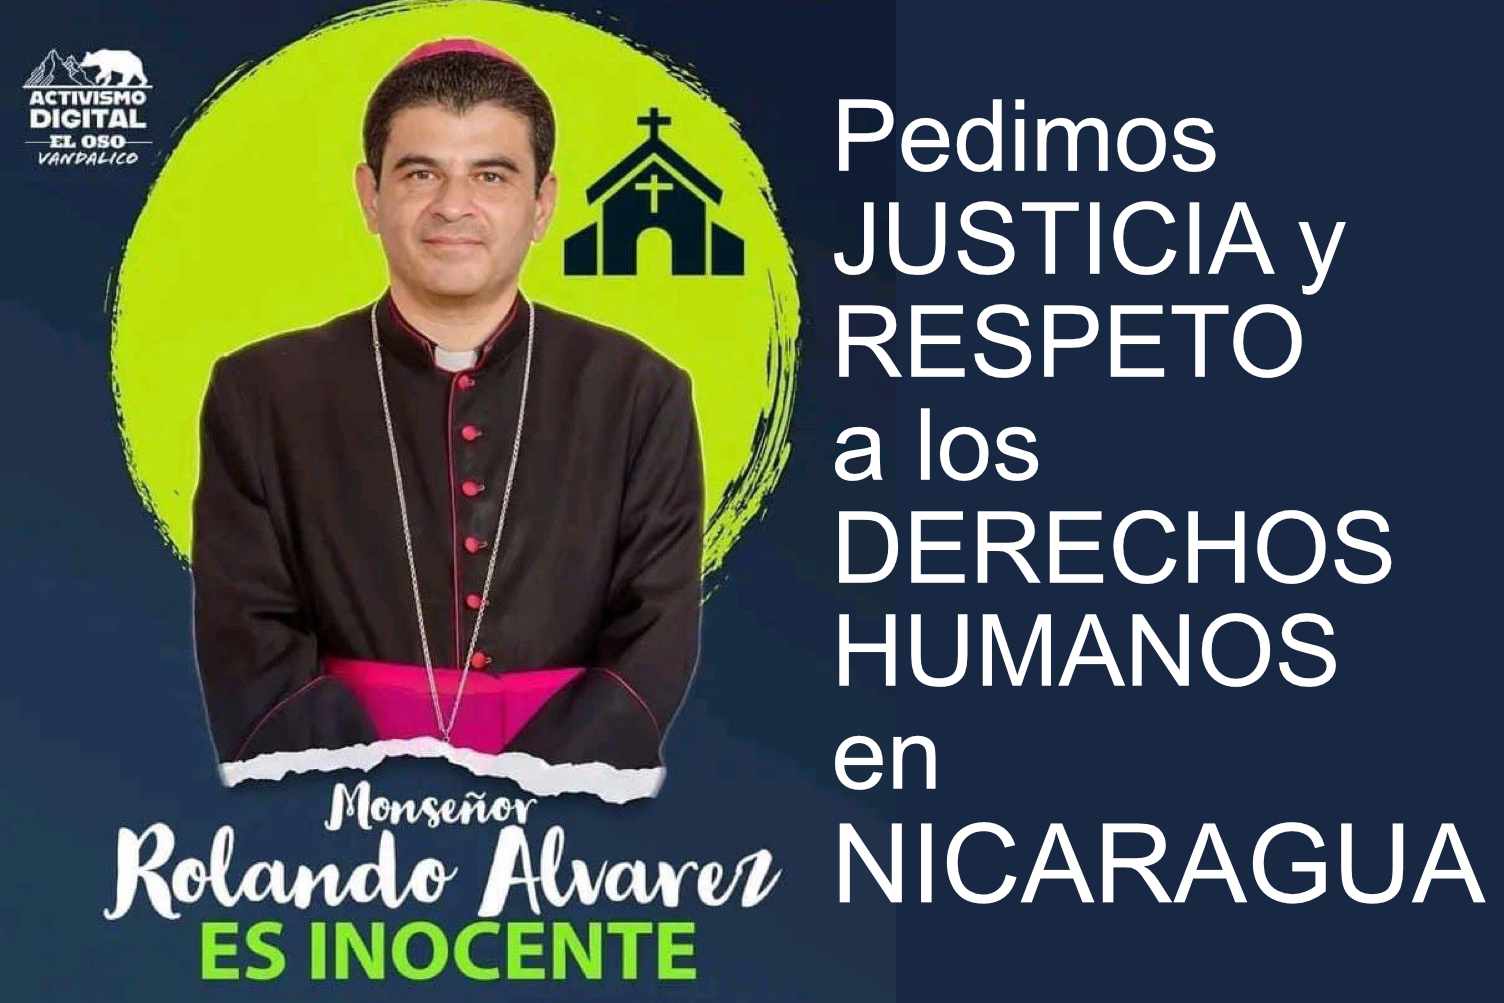 Rolando Álvarez inocente